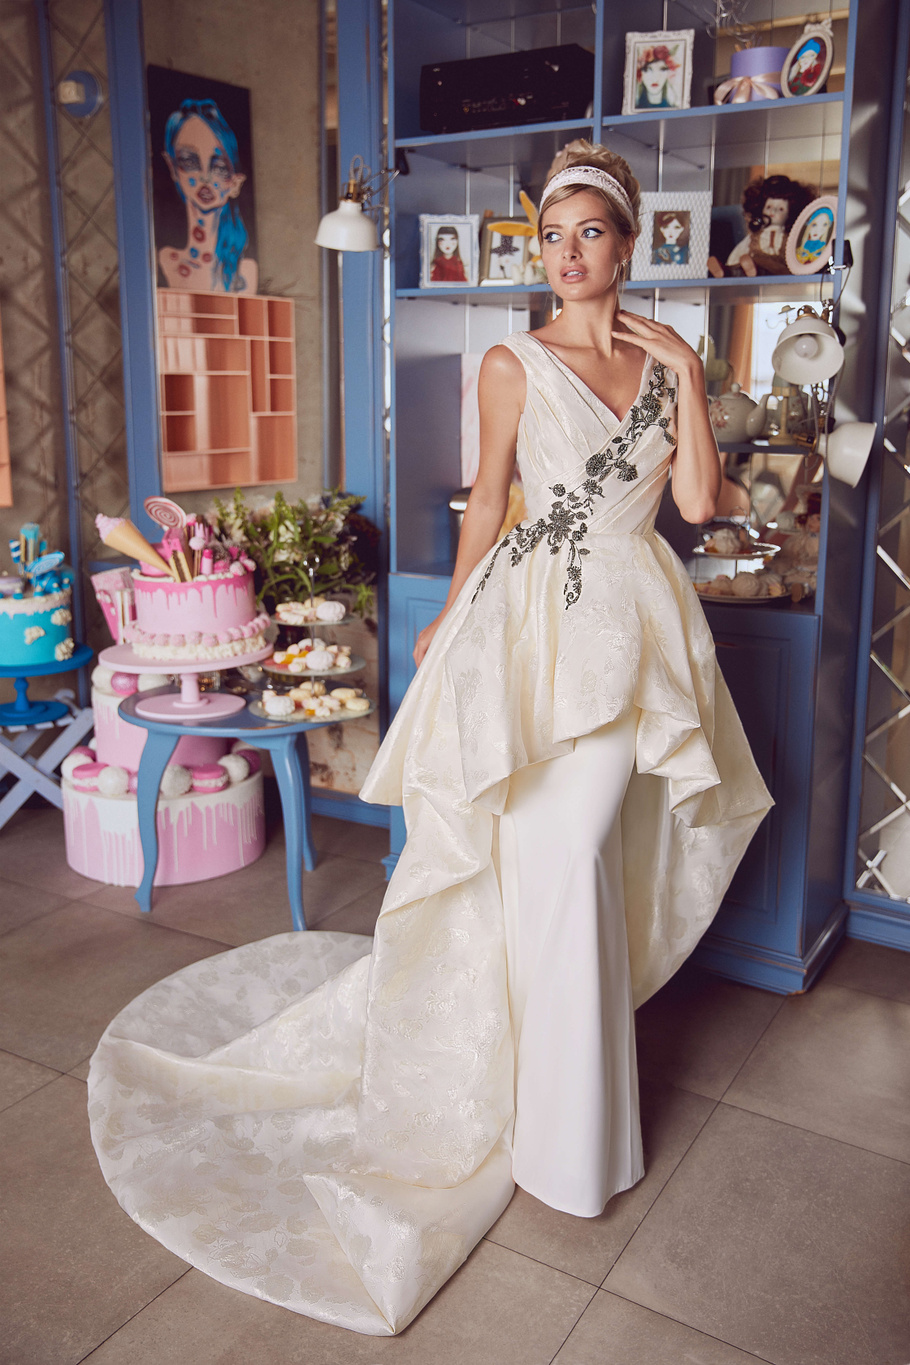 Купить свадебное платье «Ассинта» Бламмо Биамо из коллекции Свит Лайф 2021 года в Санкт-Петербурге